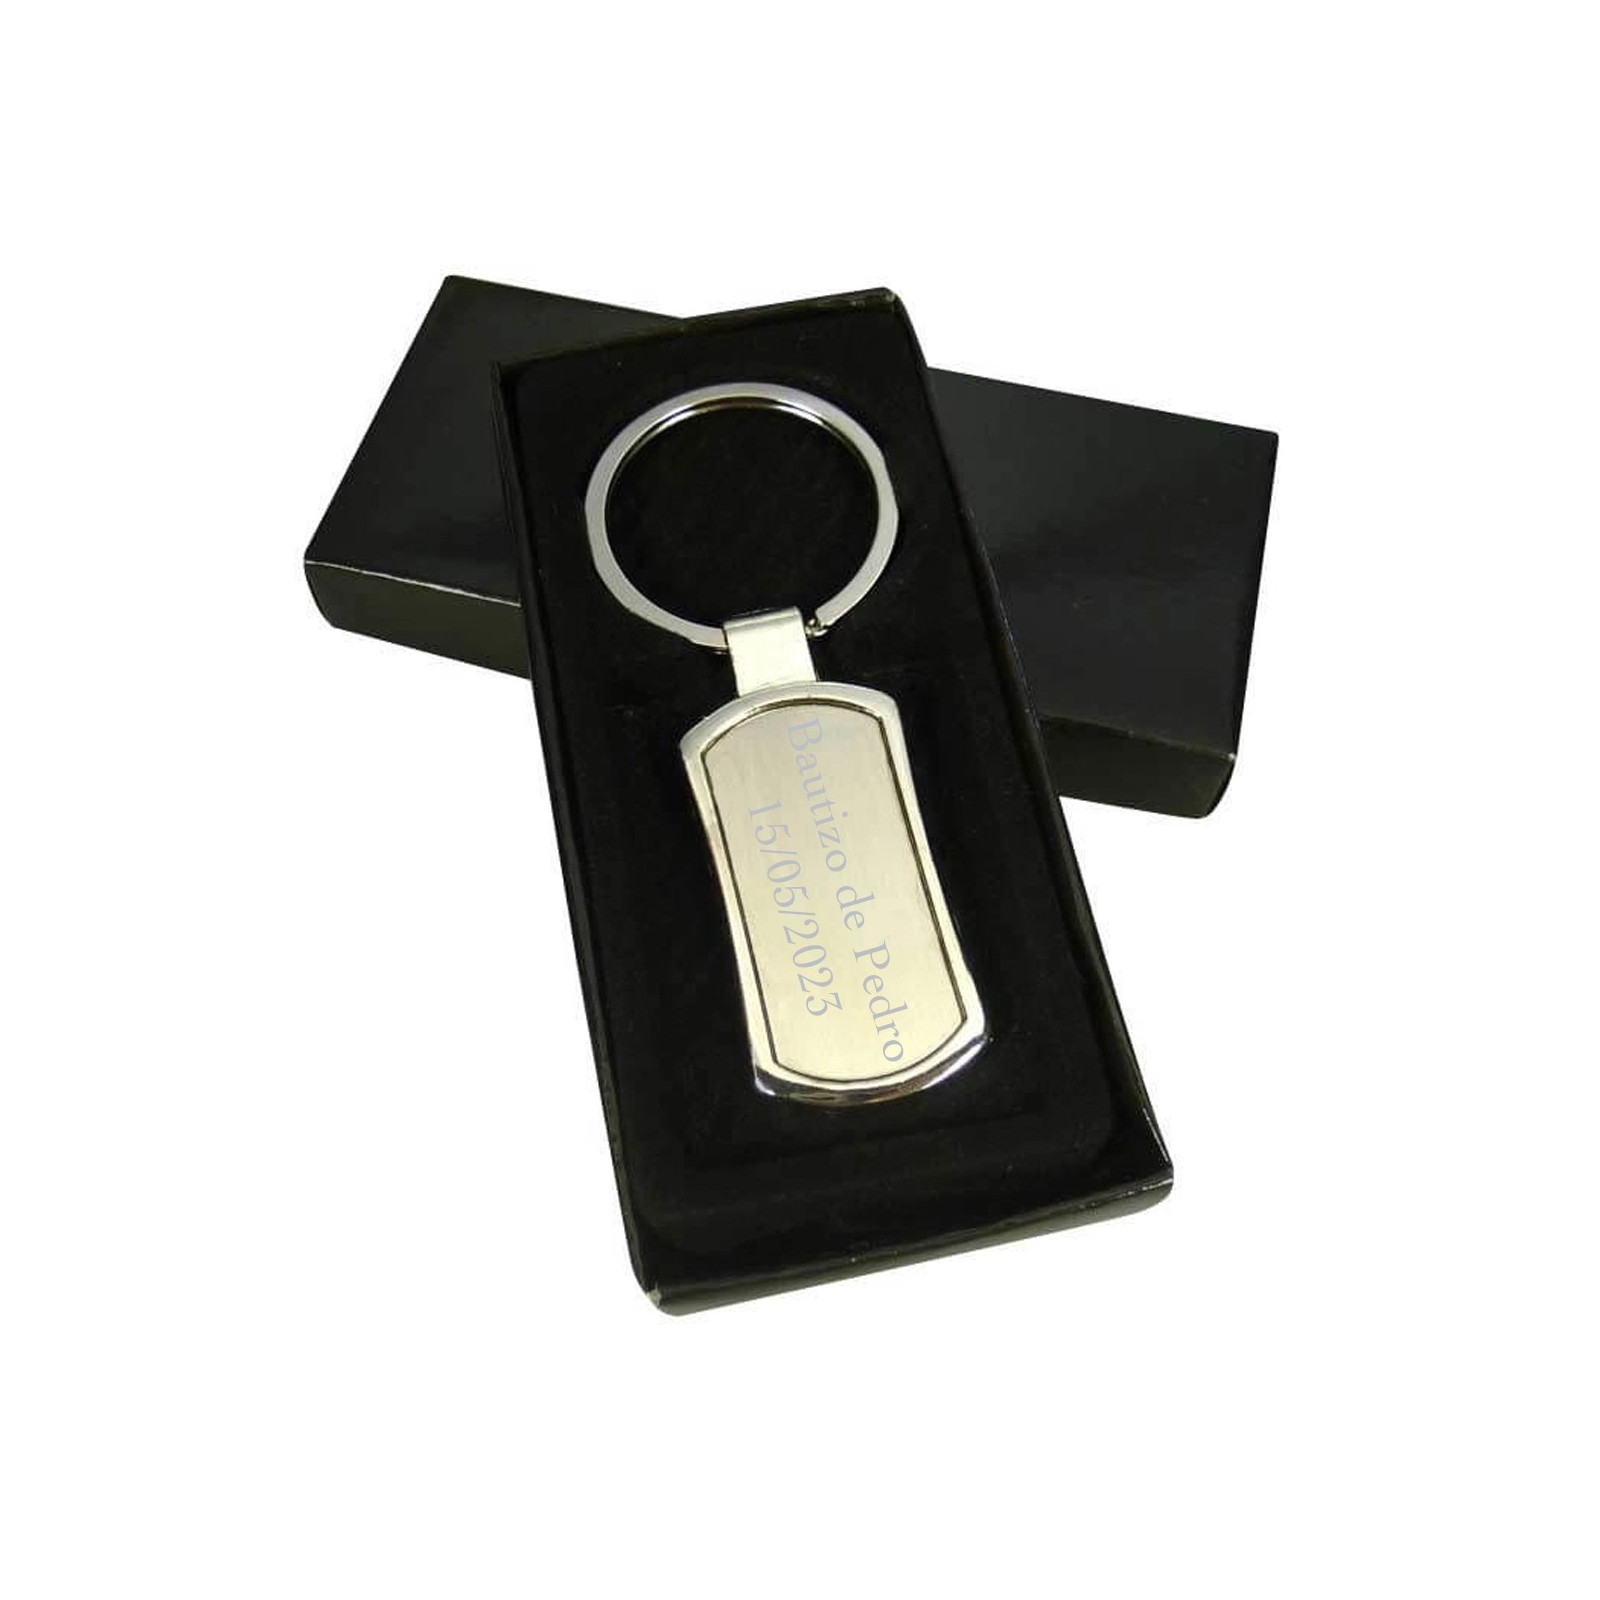 Porte clés en argent gravé au laser présenté dans une boîte